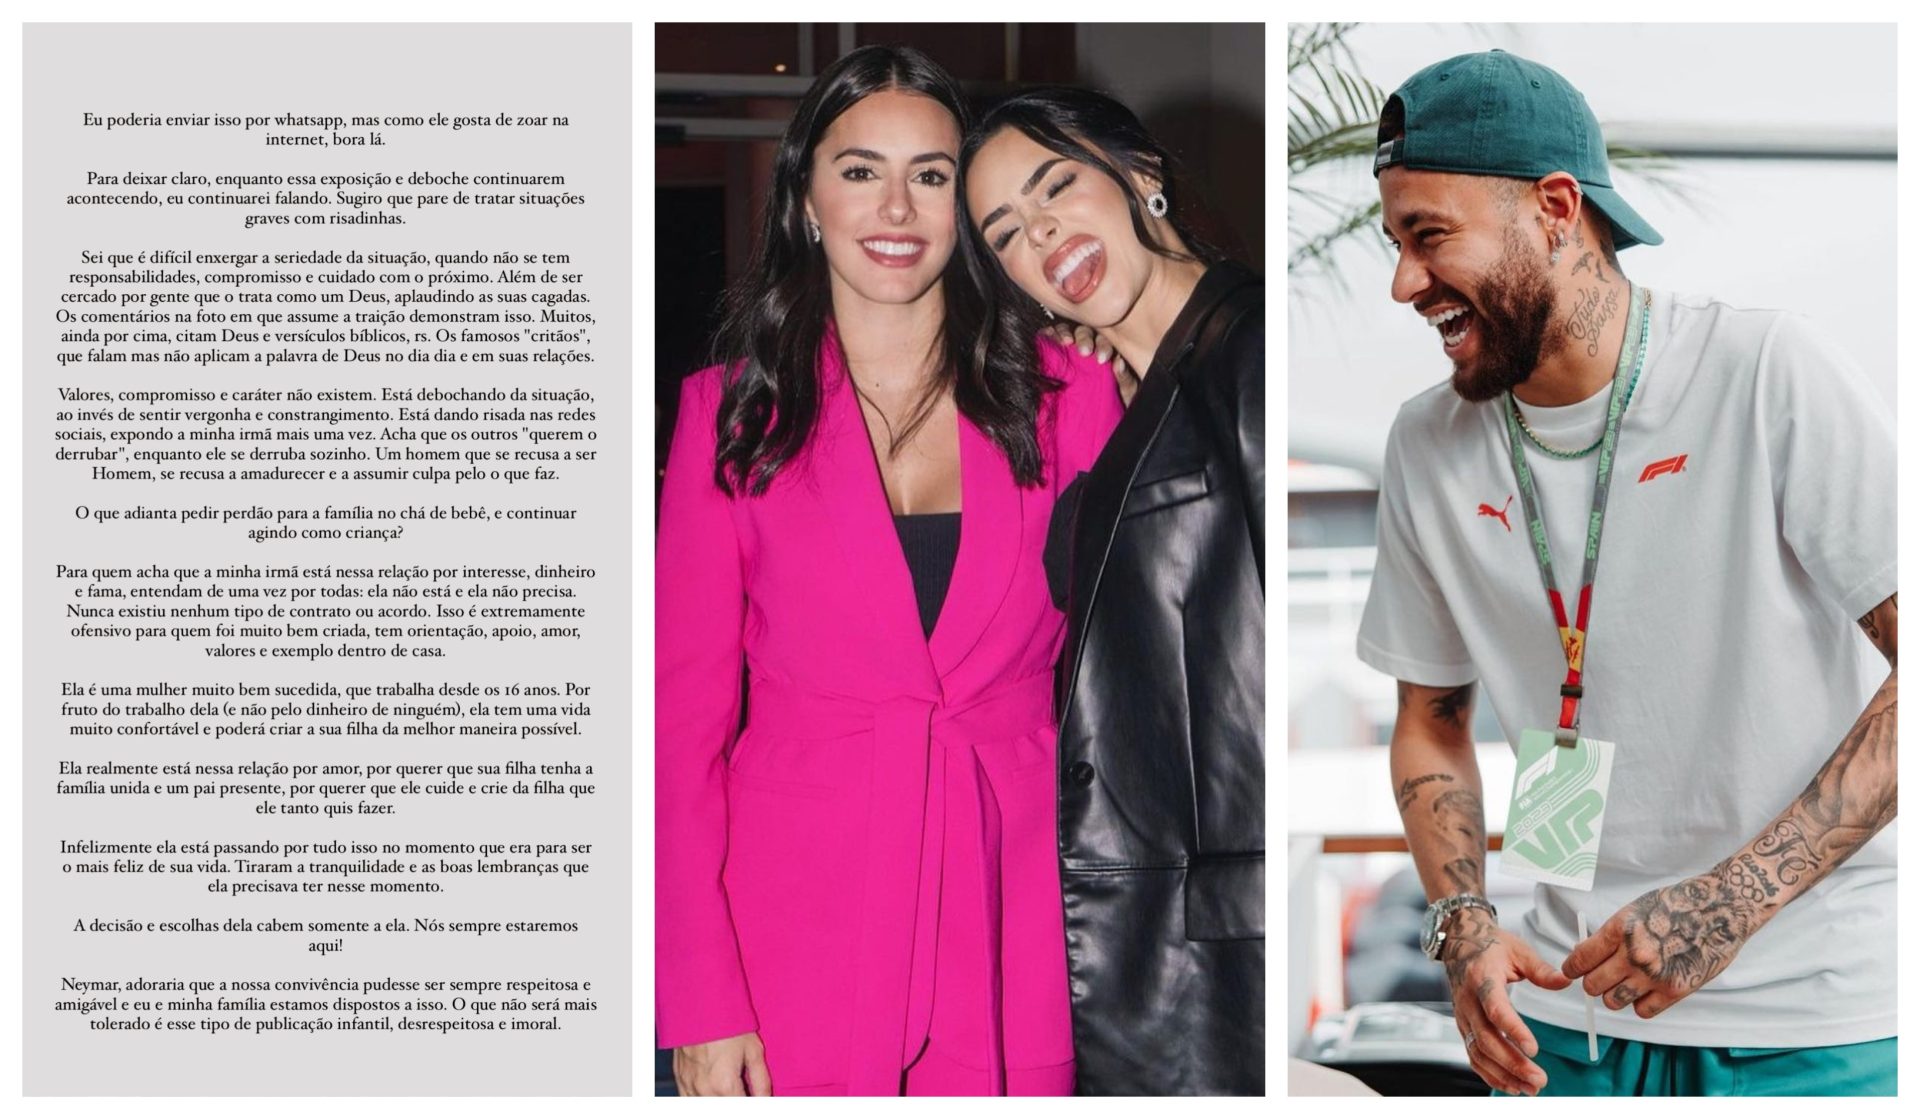 Cunhada de Neymar lançou "textão" com críticas ao craque nas redes sociais - Foto: Reprodução/Instagram @bibiancardi @neymarjr